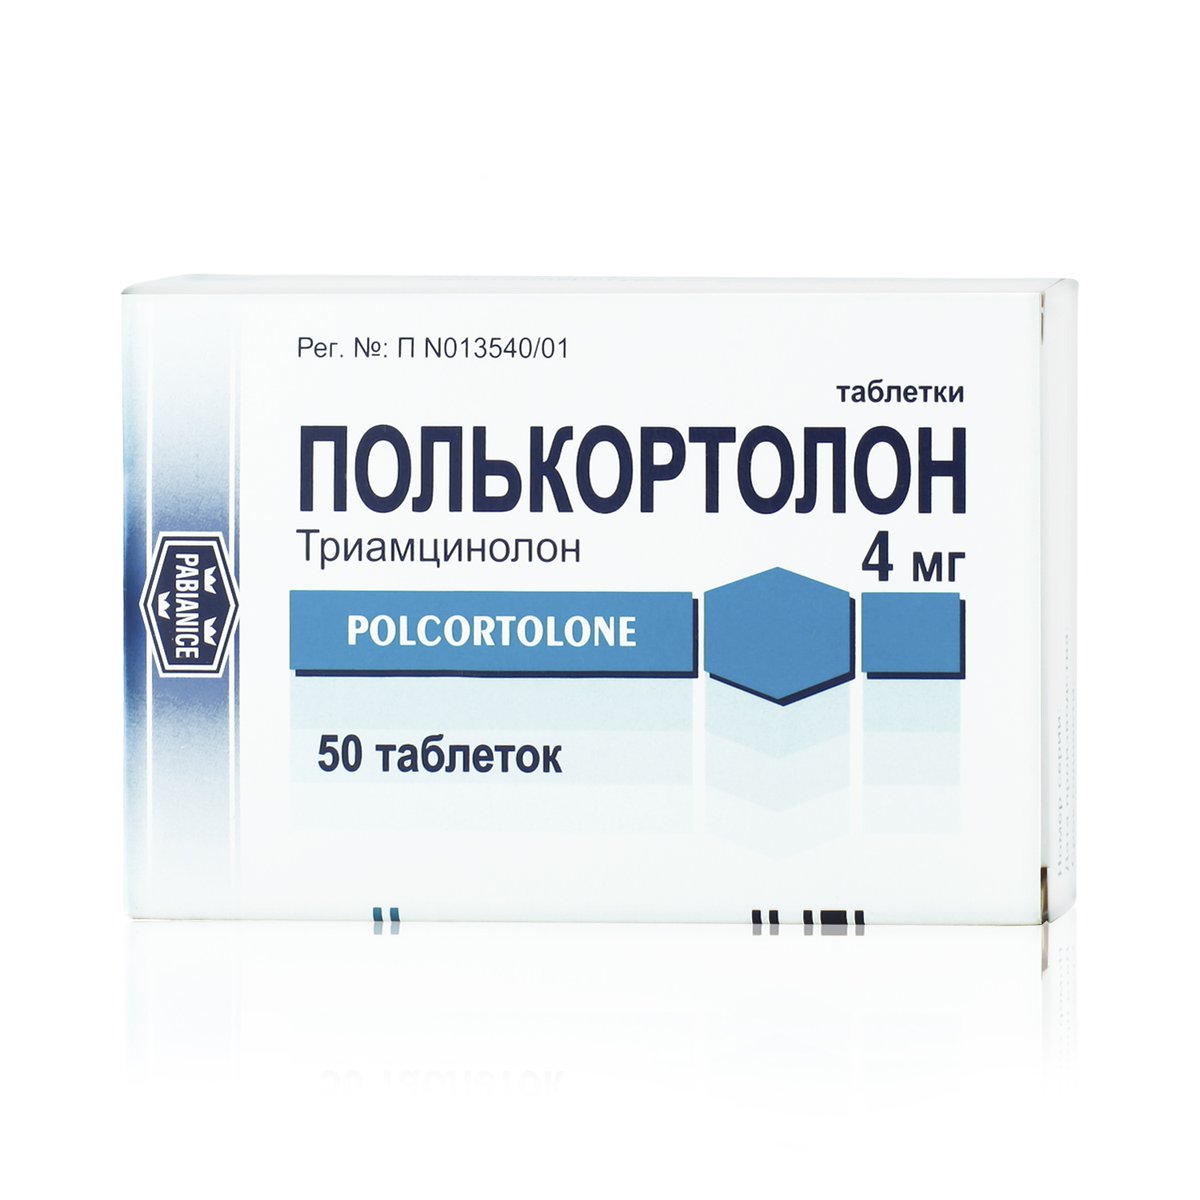 Полькортолон (таблетки, 50 шт, 4 мг, для приема внутрь) - цена,  .